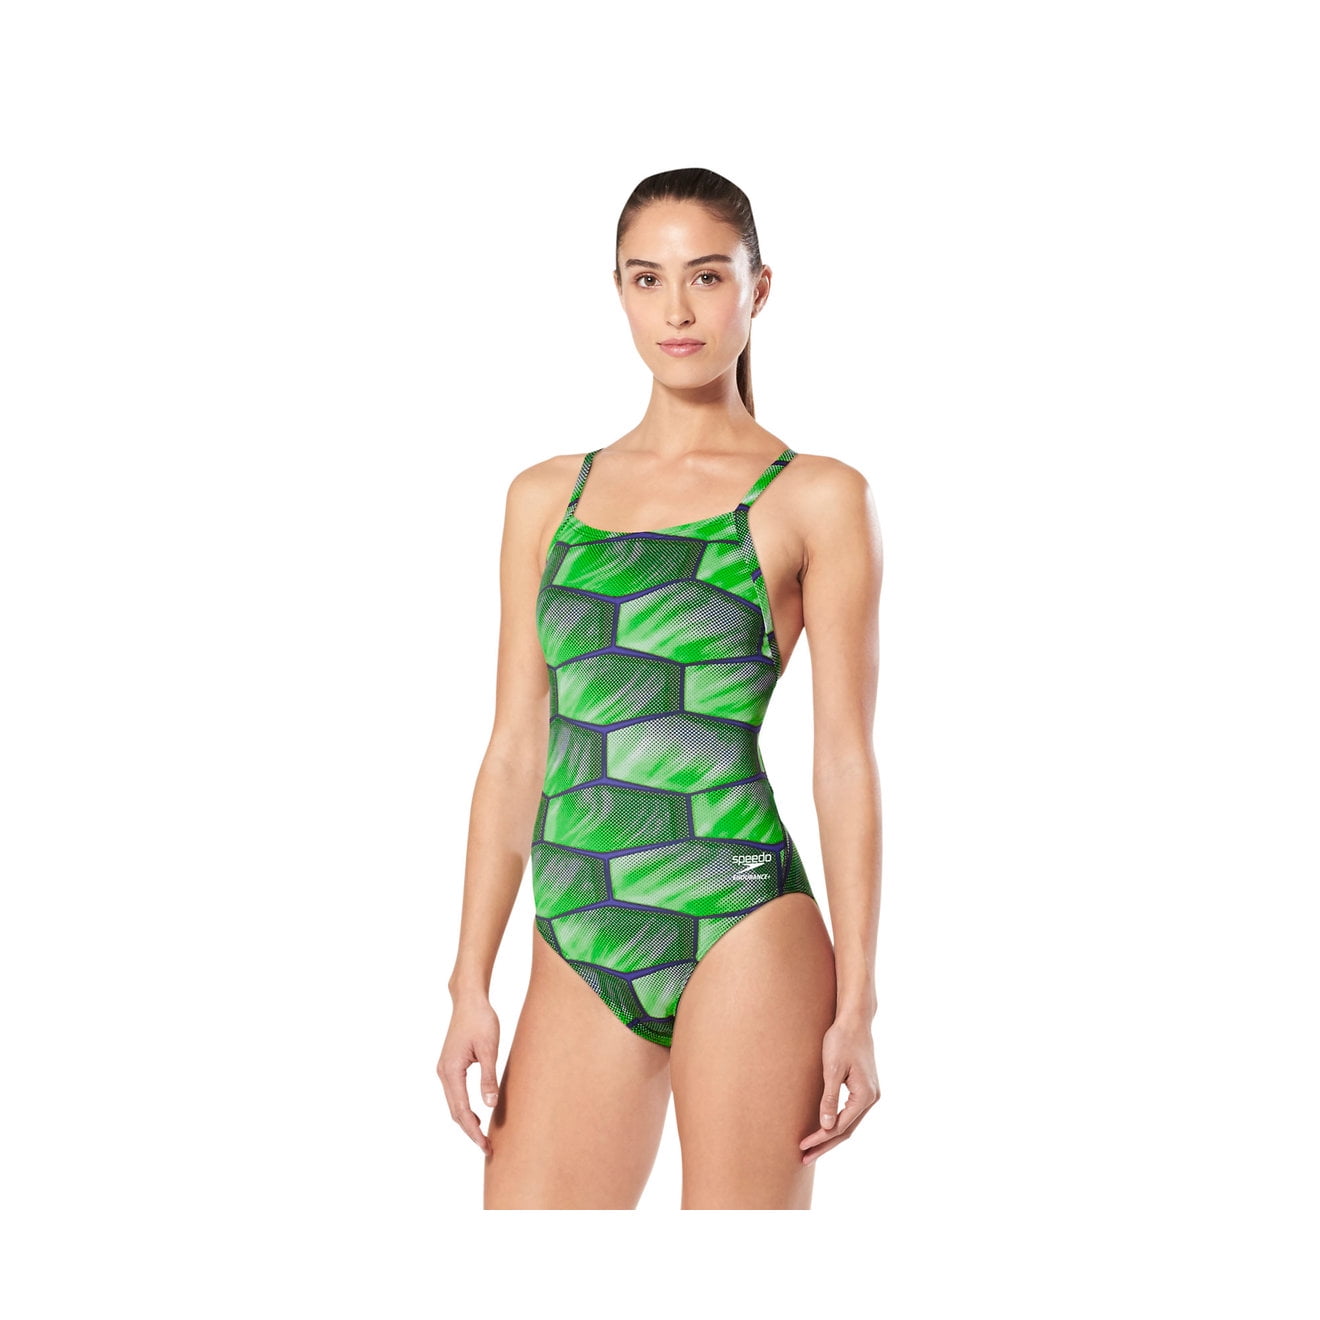 engel Nebu Klein Speedo Swimsuit SHELL SHOCK Flyback Blue/Green Size 28 - Walmart.com